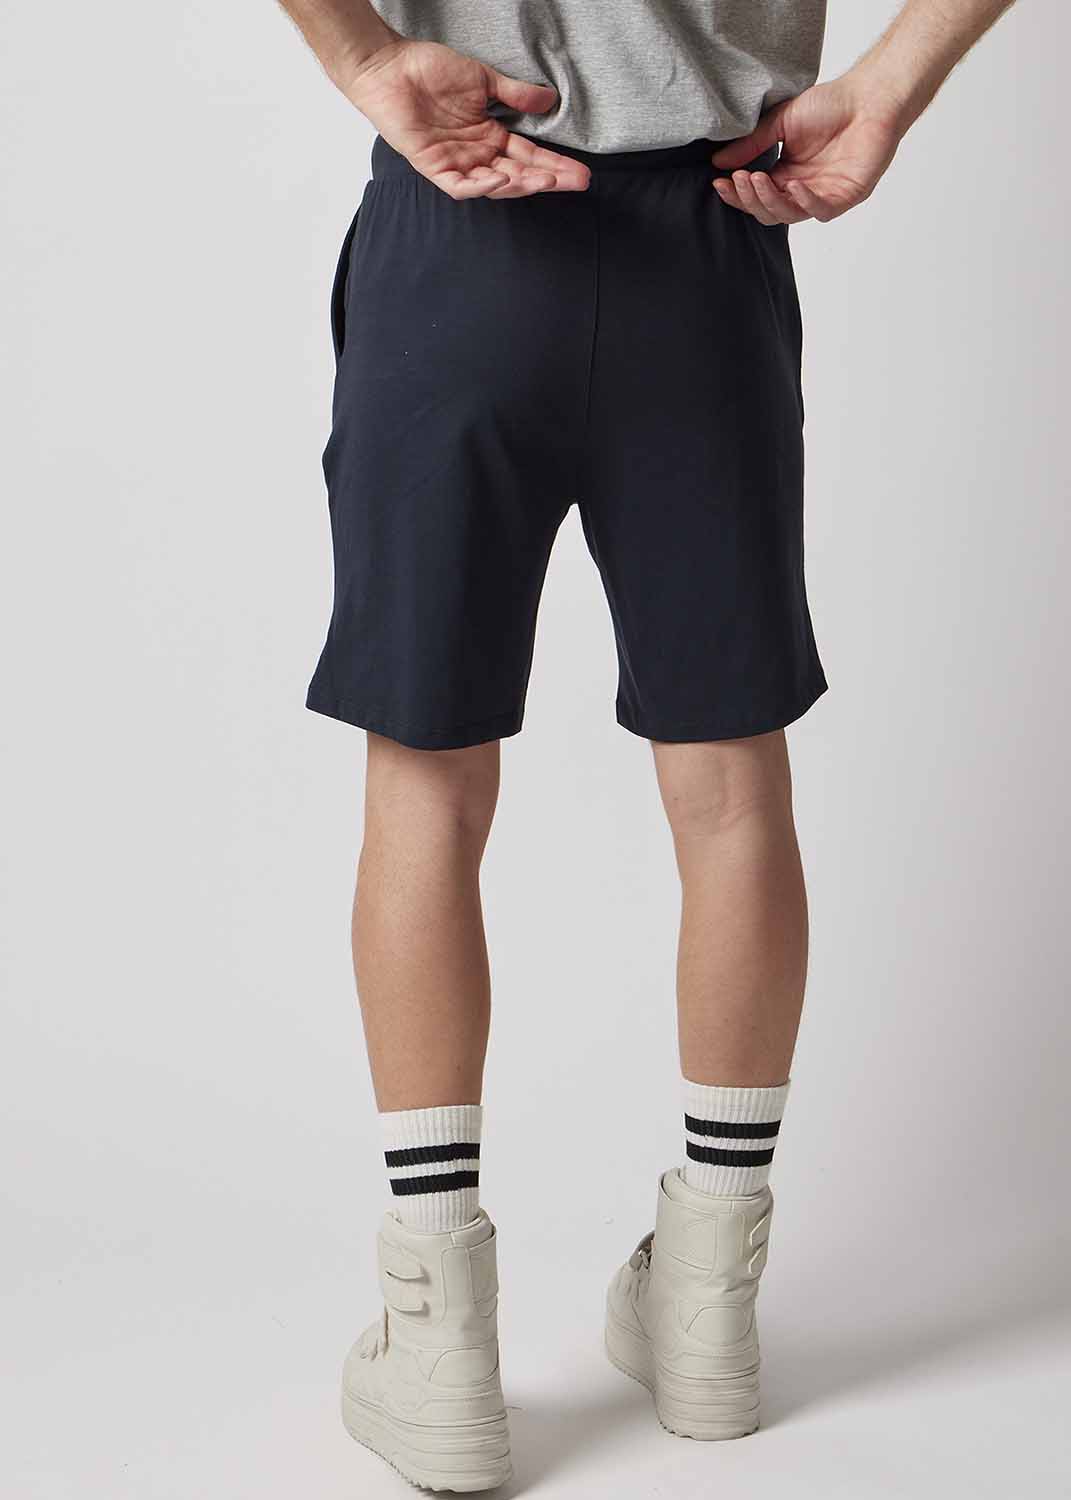 Shorts OWN jersey BLU da uomo in cotone biologico organico_103627